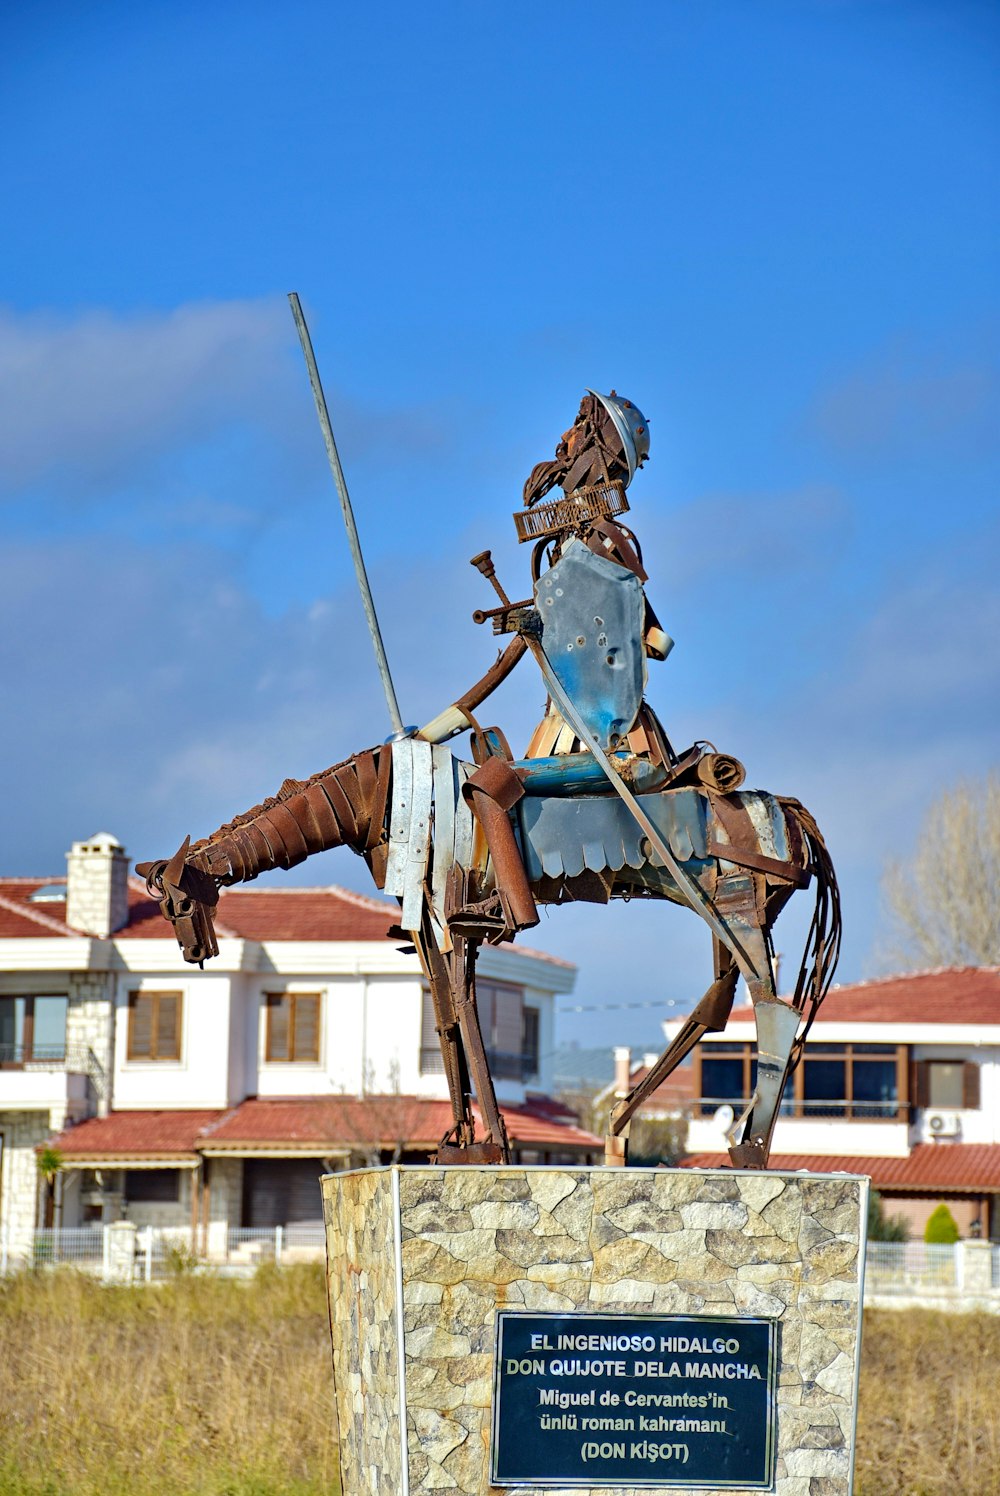 Une statue d’un homme sur un cheval avec une épée